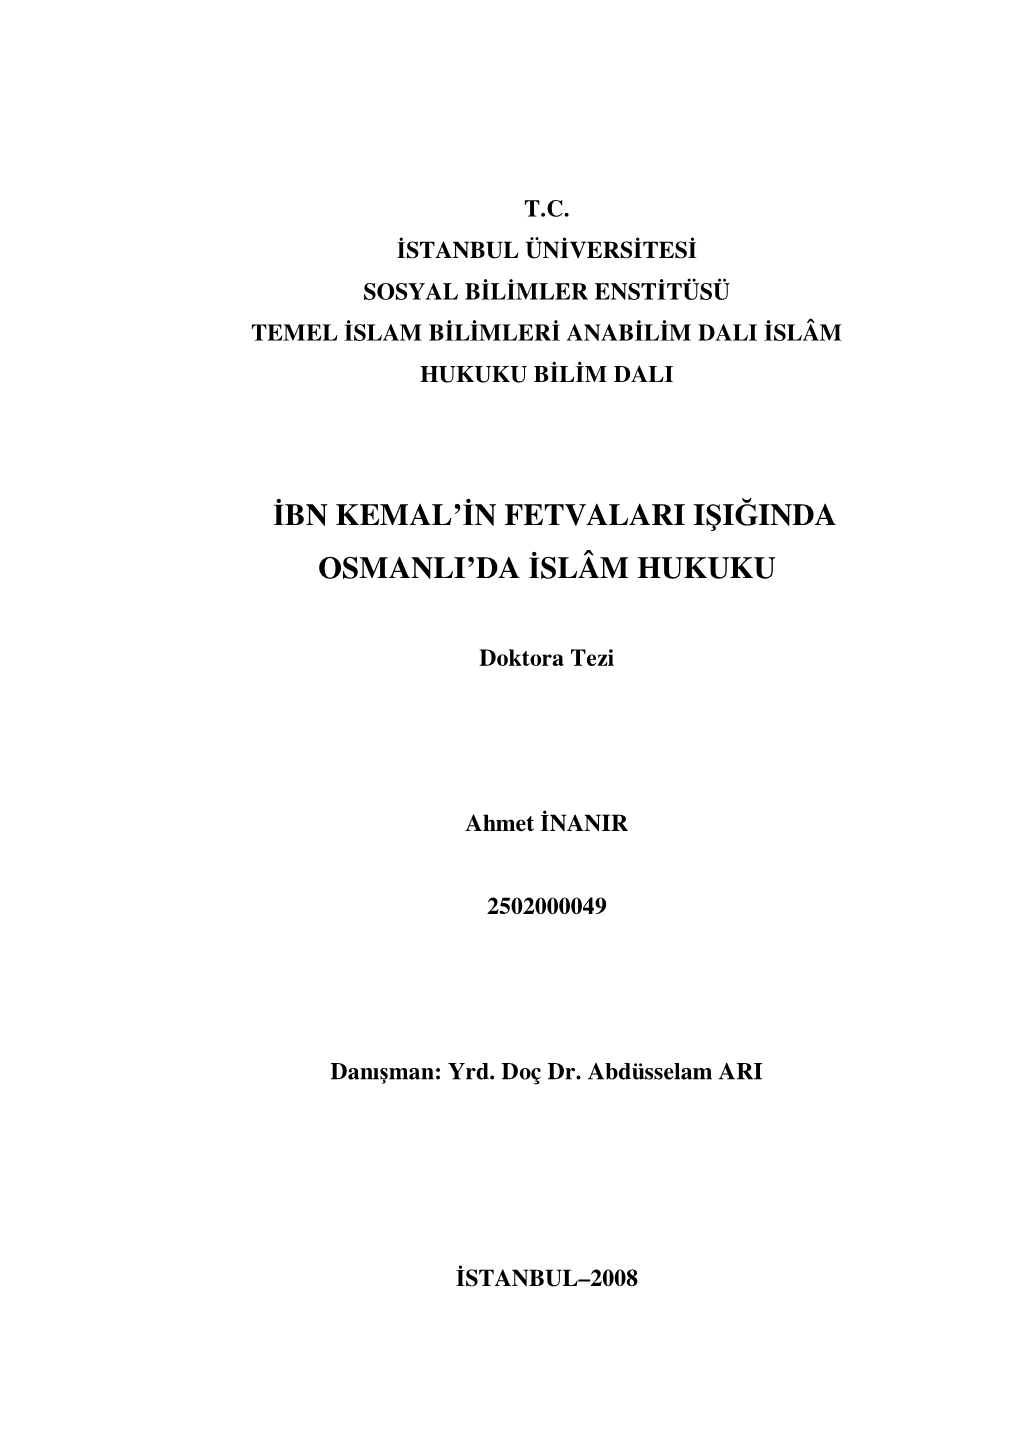 Ibn Kemal'in Fetvalari Işiğinda Osmanli'da Islâm Hukuku